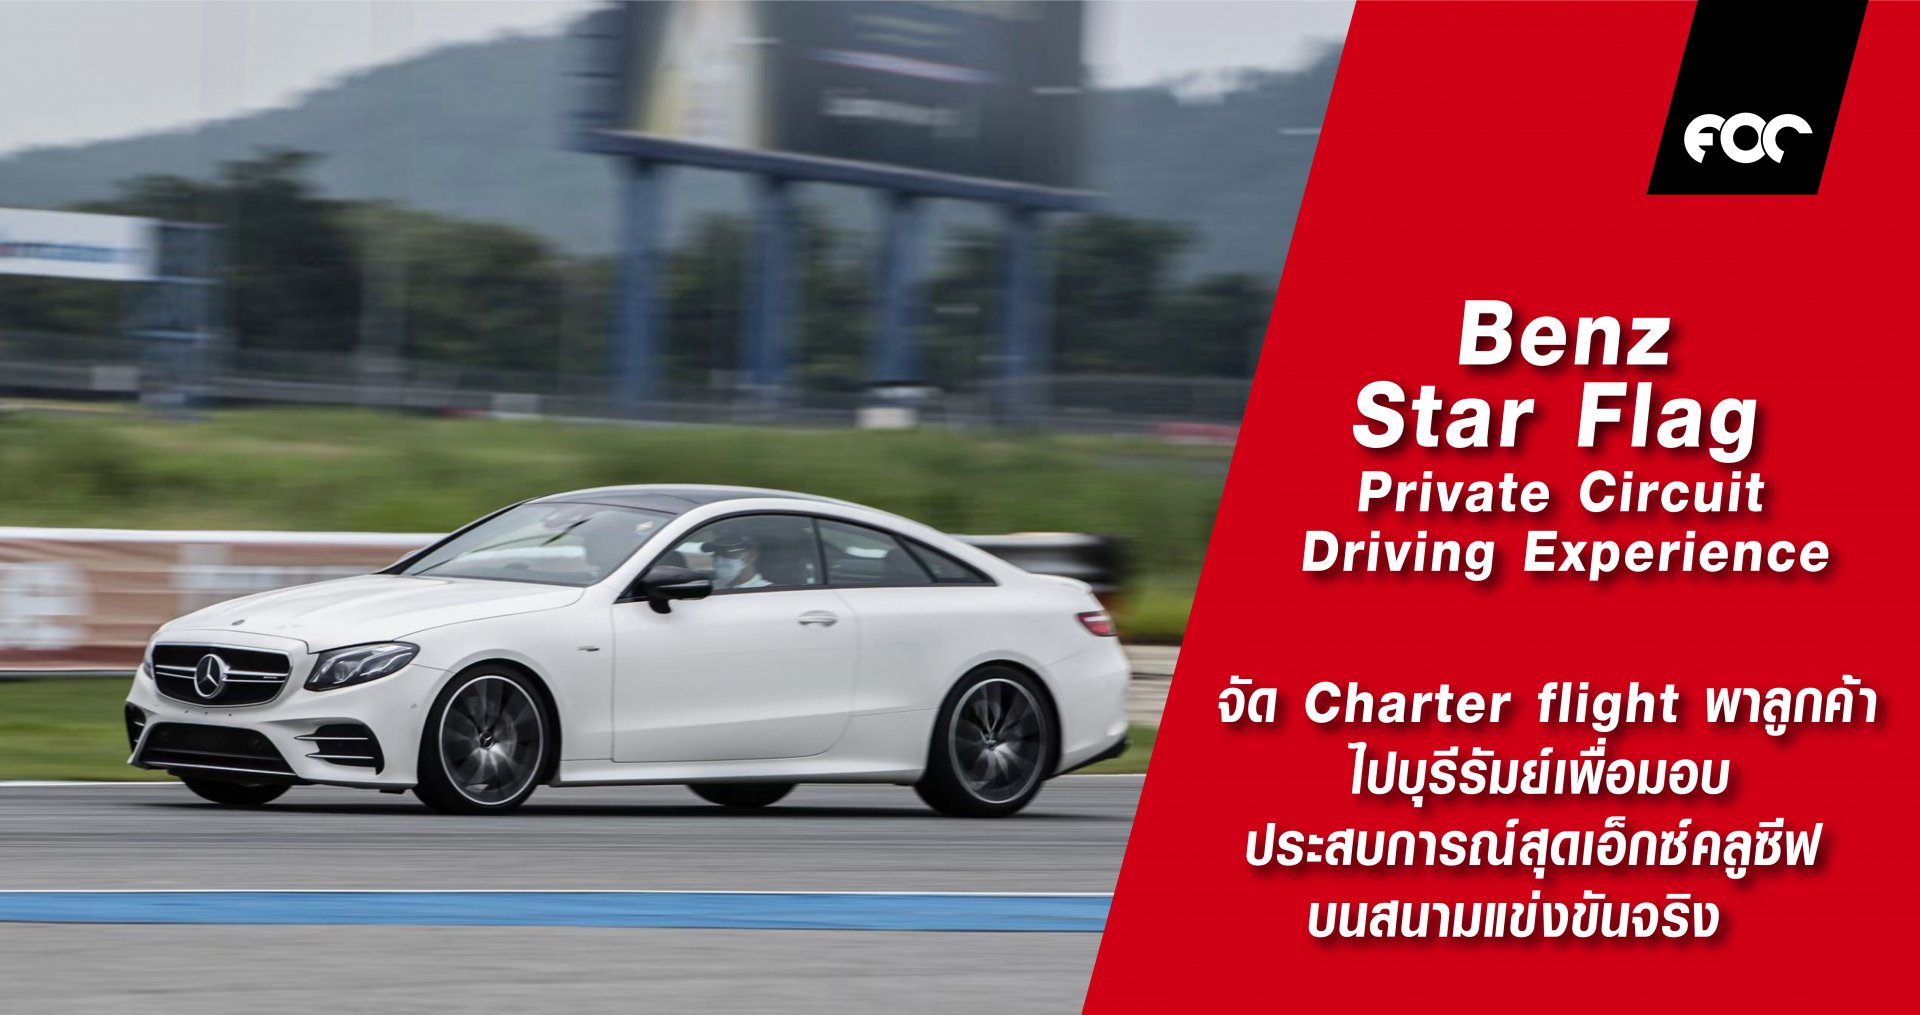 เบนซ์ สตาร์แฟลก ร่วมกับ Mercedes-Benz Thailand เปิดประสบการณ์บนสนามแข่งจริงจัด Charter flight พาลูกค้าไปบุรีรัมย์ กับ “Private Circuit Driving Experience” โดย “ชยุส ยังพิชิต” ซีอีโอนักแข่งรถ นำลงแทรคแบบเอ็กซ์คลูซีฟสุดๆ พร้อมเปิดโปรโมชั่นพิเศษในงานมอเตอร์โ